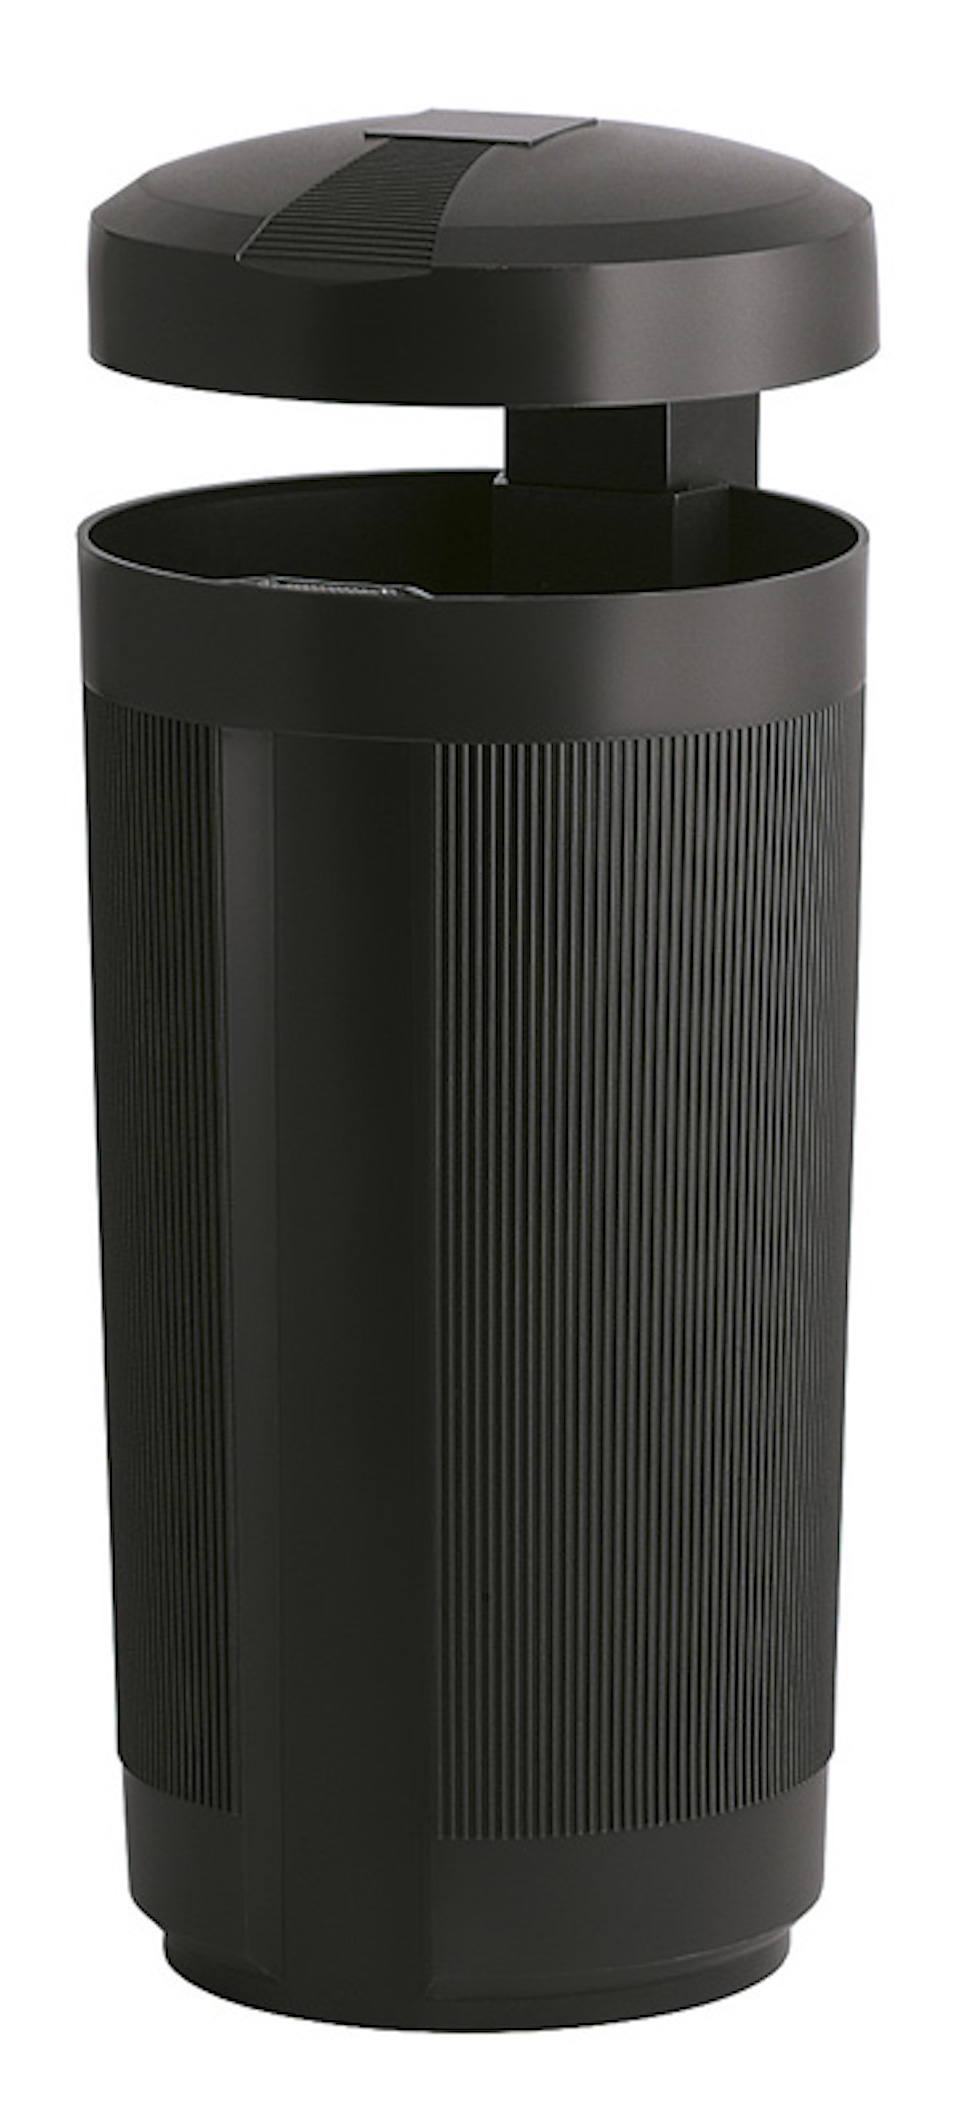 Abfallbehälter aus UV-beständigen Polyethylen für den Außenbereich | 50 Liter, Höhe 84cm | Schwarz